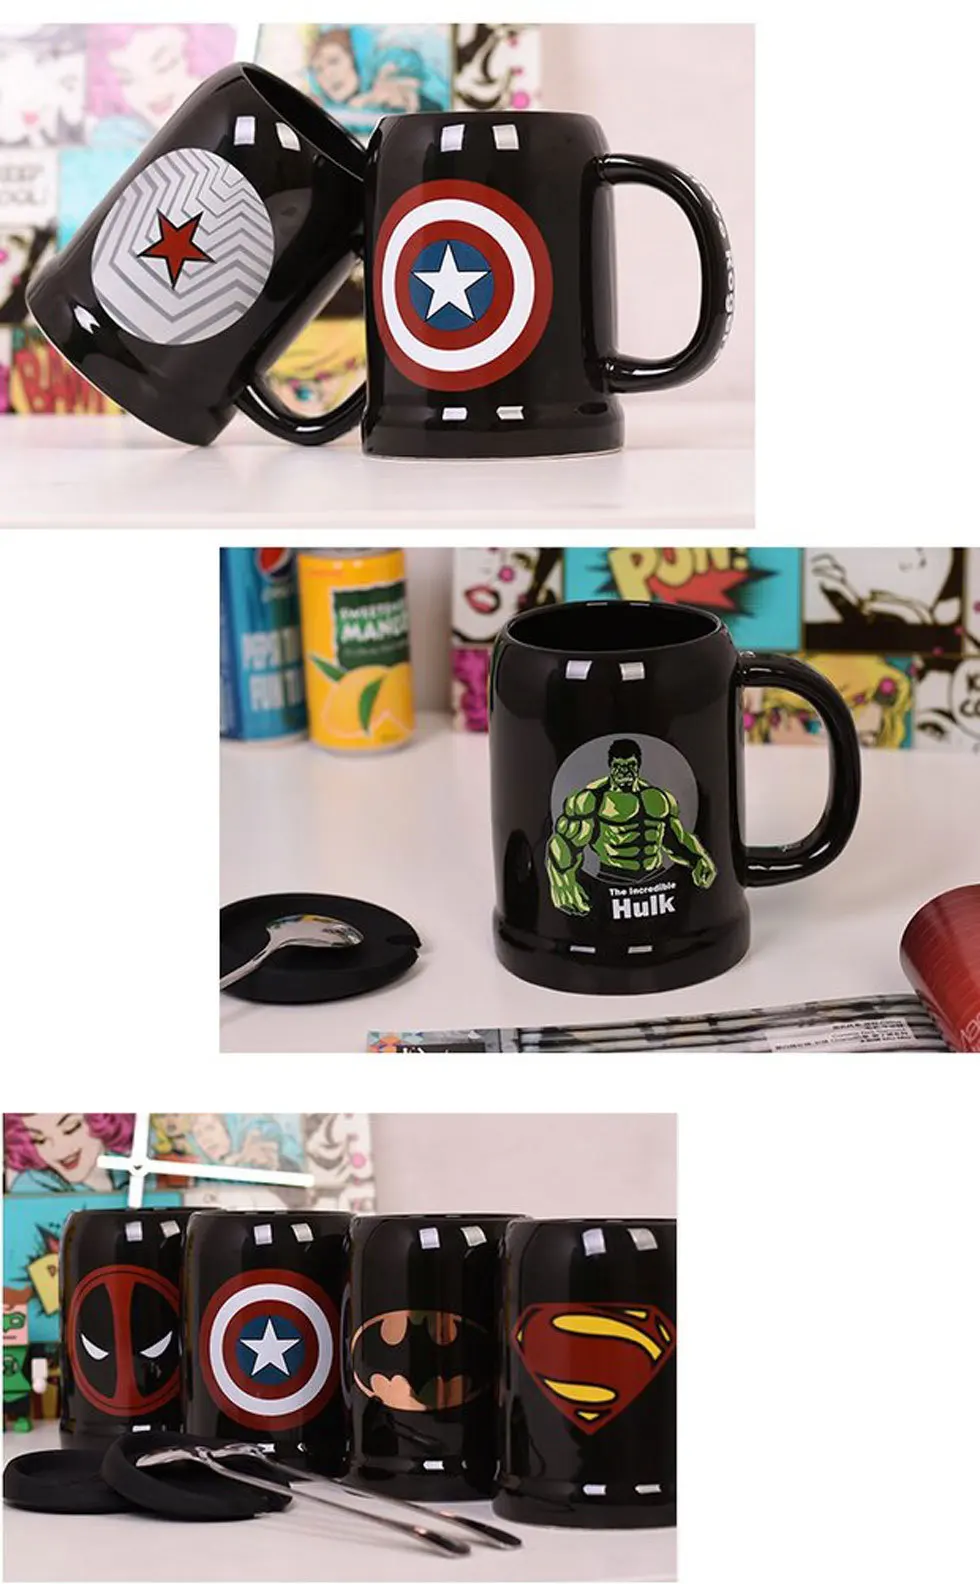 Caneca супергерой Супермен Капитан Америка керамическая Халк кружка кофе чай молоко горячей воды чашки Посуда для напитков цвет Novetly Рождественский подарок